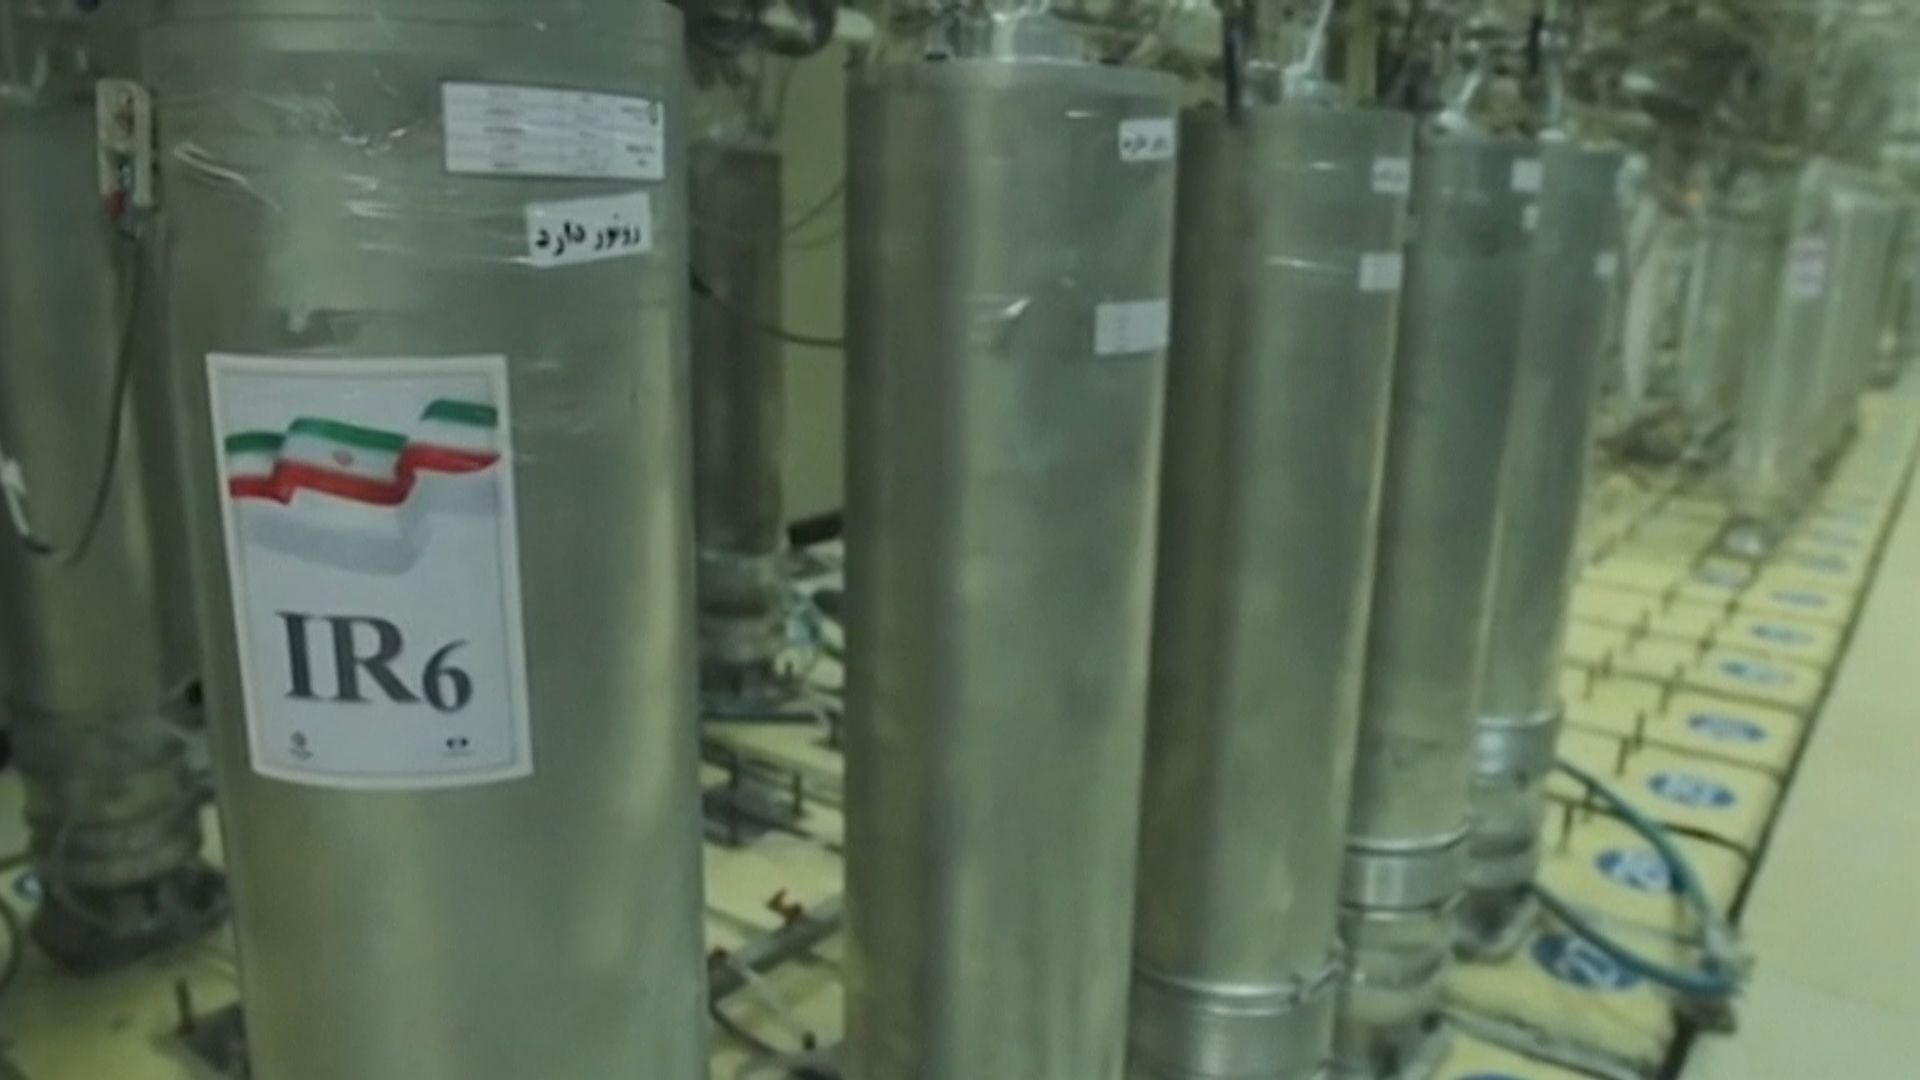 伊朗允國際原子能機構更換核設施內攝錄鏡頭記憶卡